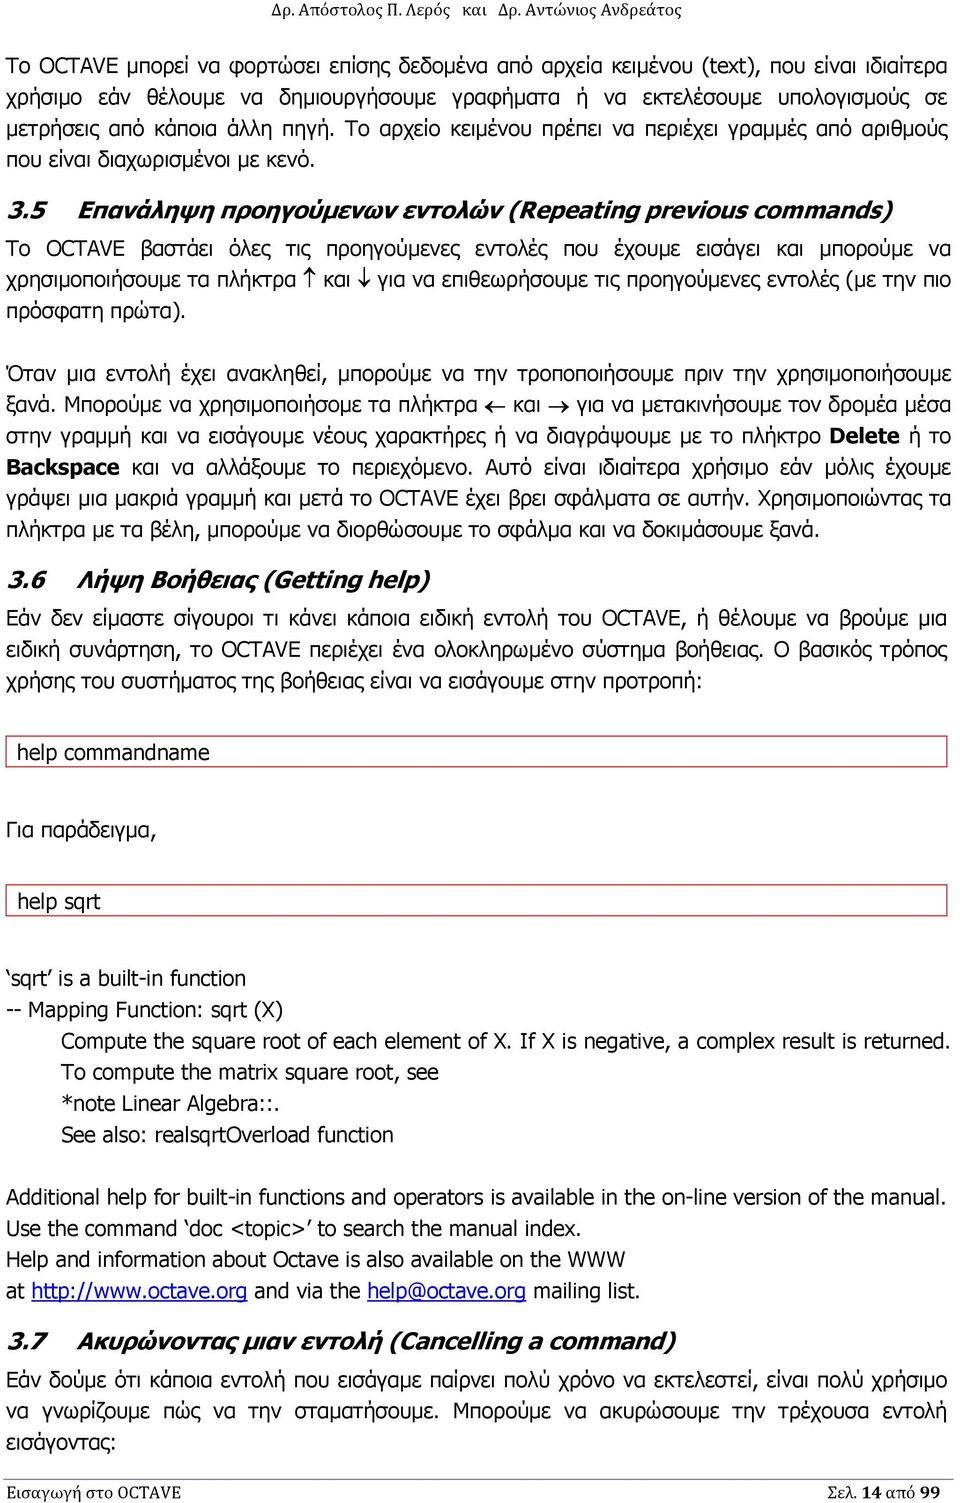 Εισαγωγή στο εργαλείο επεξεργασίας αριθµητικών δεδοµένων Octave - PDF Free  Download